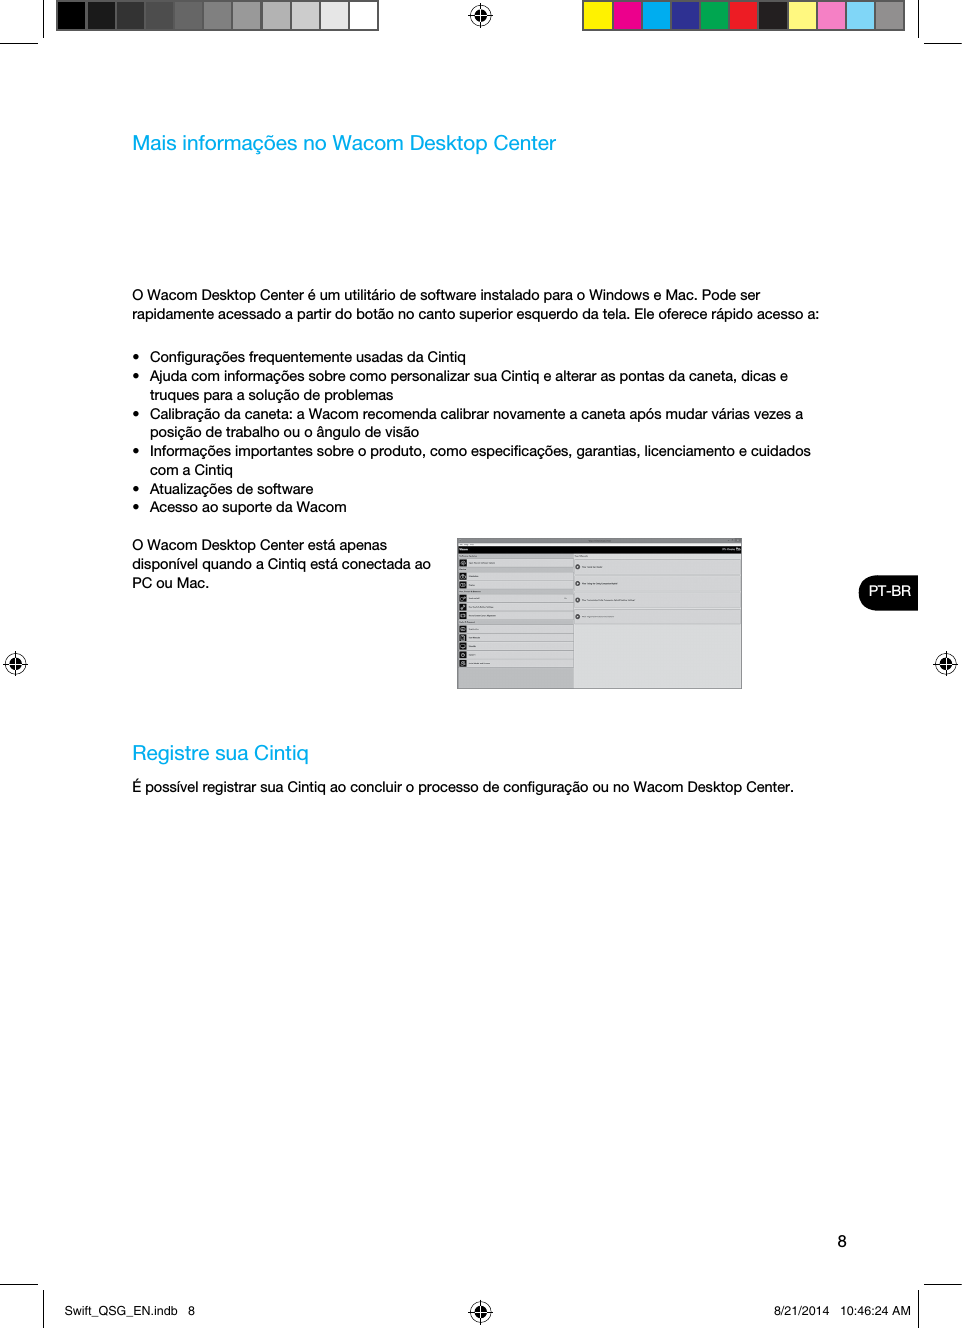 8PT-BRMais informações no Wacom Desktop CenterO Wacom Desktop Center é um utilitário de software instalado para o Windows e Mac. Pode ser rapidamente acessado a partir do botão no canto superior esquerdo da tela. Ele oferece rápido acesso a:•  Conﬁgurações frequentemente usadas da Cintiq•  Ajuda com informações sobre como personalizar sua Cintiq e alterar as pontas da caneta, dicas e truques para a solução de problemas•  Calibração da caneta: a Wacom recomenda calibrar novamente a caneta após mudar várias vezes a posição de trabalho ou o ângulo de visão•  Informações importantes sobre o produto, como especiﬁcações, garantias, licenciamento e cuidados com a Cintiq•  Atualizações de software•  Acesso ao suporte da WacomO Wacom Desktop Center está apenas disponível quando a Cintiq está conectada ao PC ou Mac.Registre sua CintiqÉ possível registrar sua Cintiq ao concluir o processo de conﬁguração ou no Wacom Desktop Center.Swift_QSG_EN.indb   8 8/21/2014   10:46:24 AM